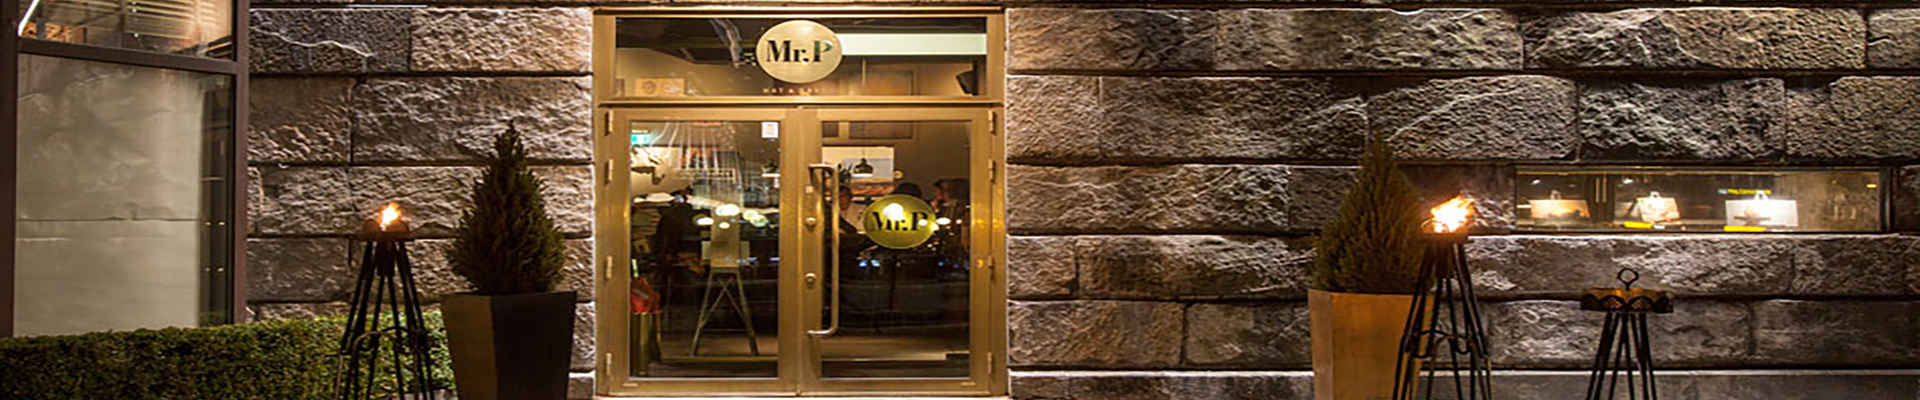 mr-p-götaplatsgruppen-restaurang-belysning-ljusdesign-ljussättning-göteborg